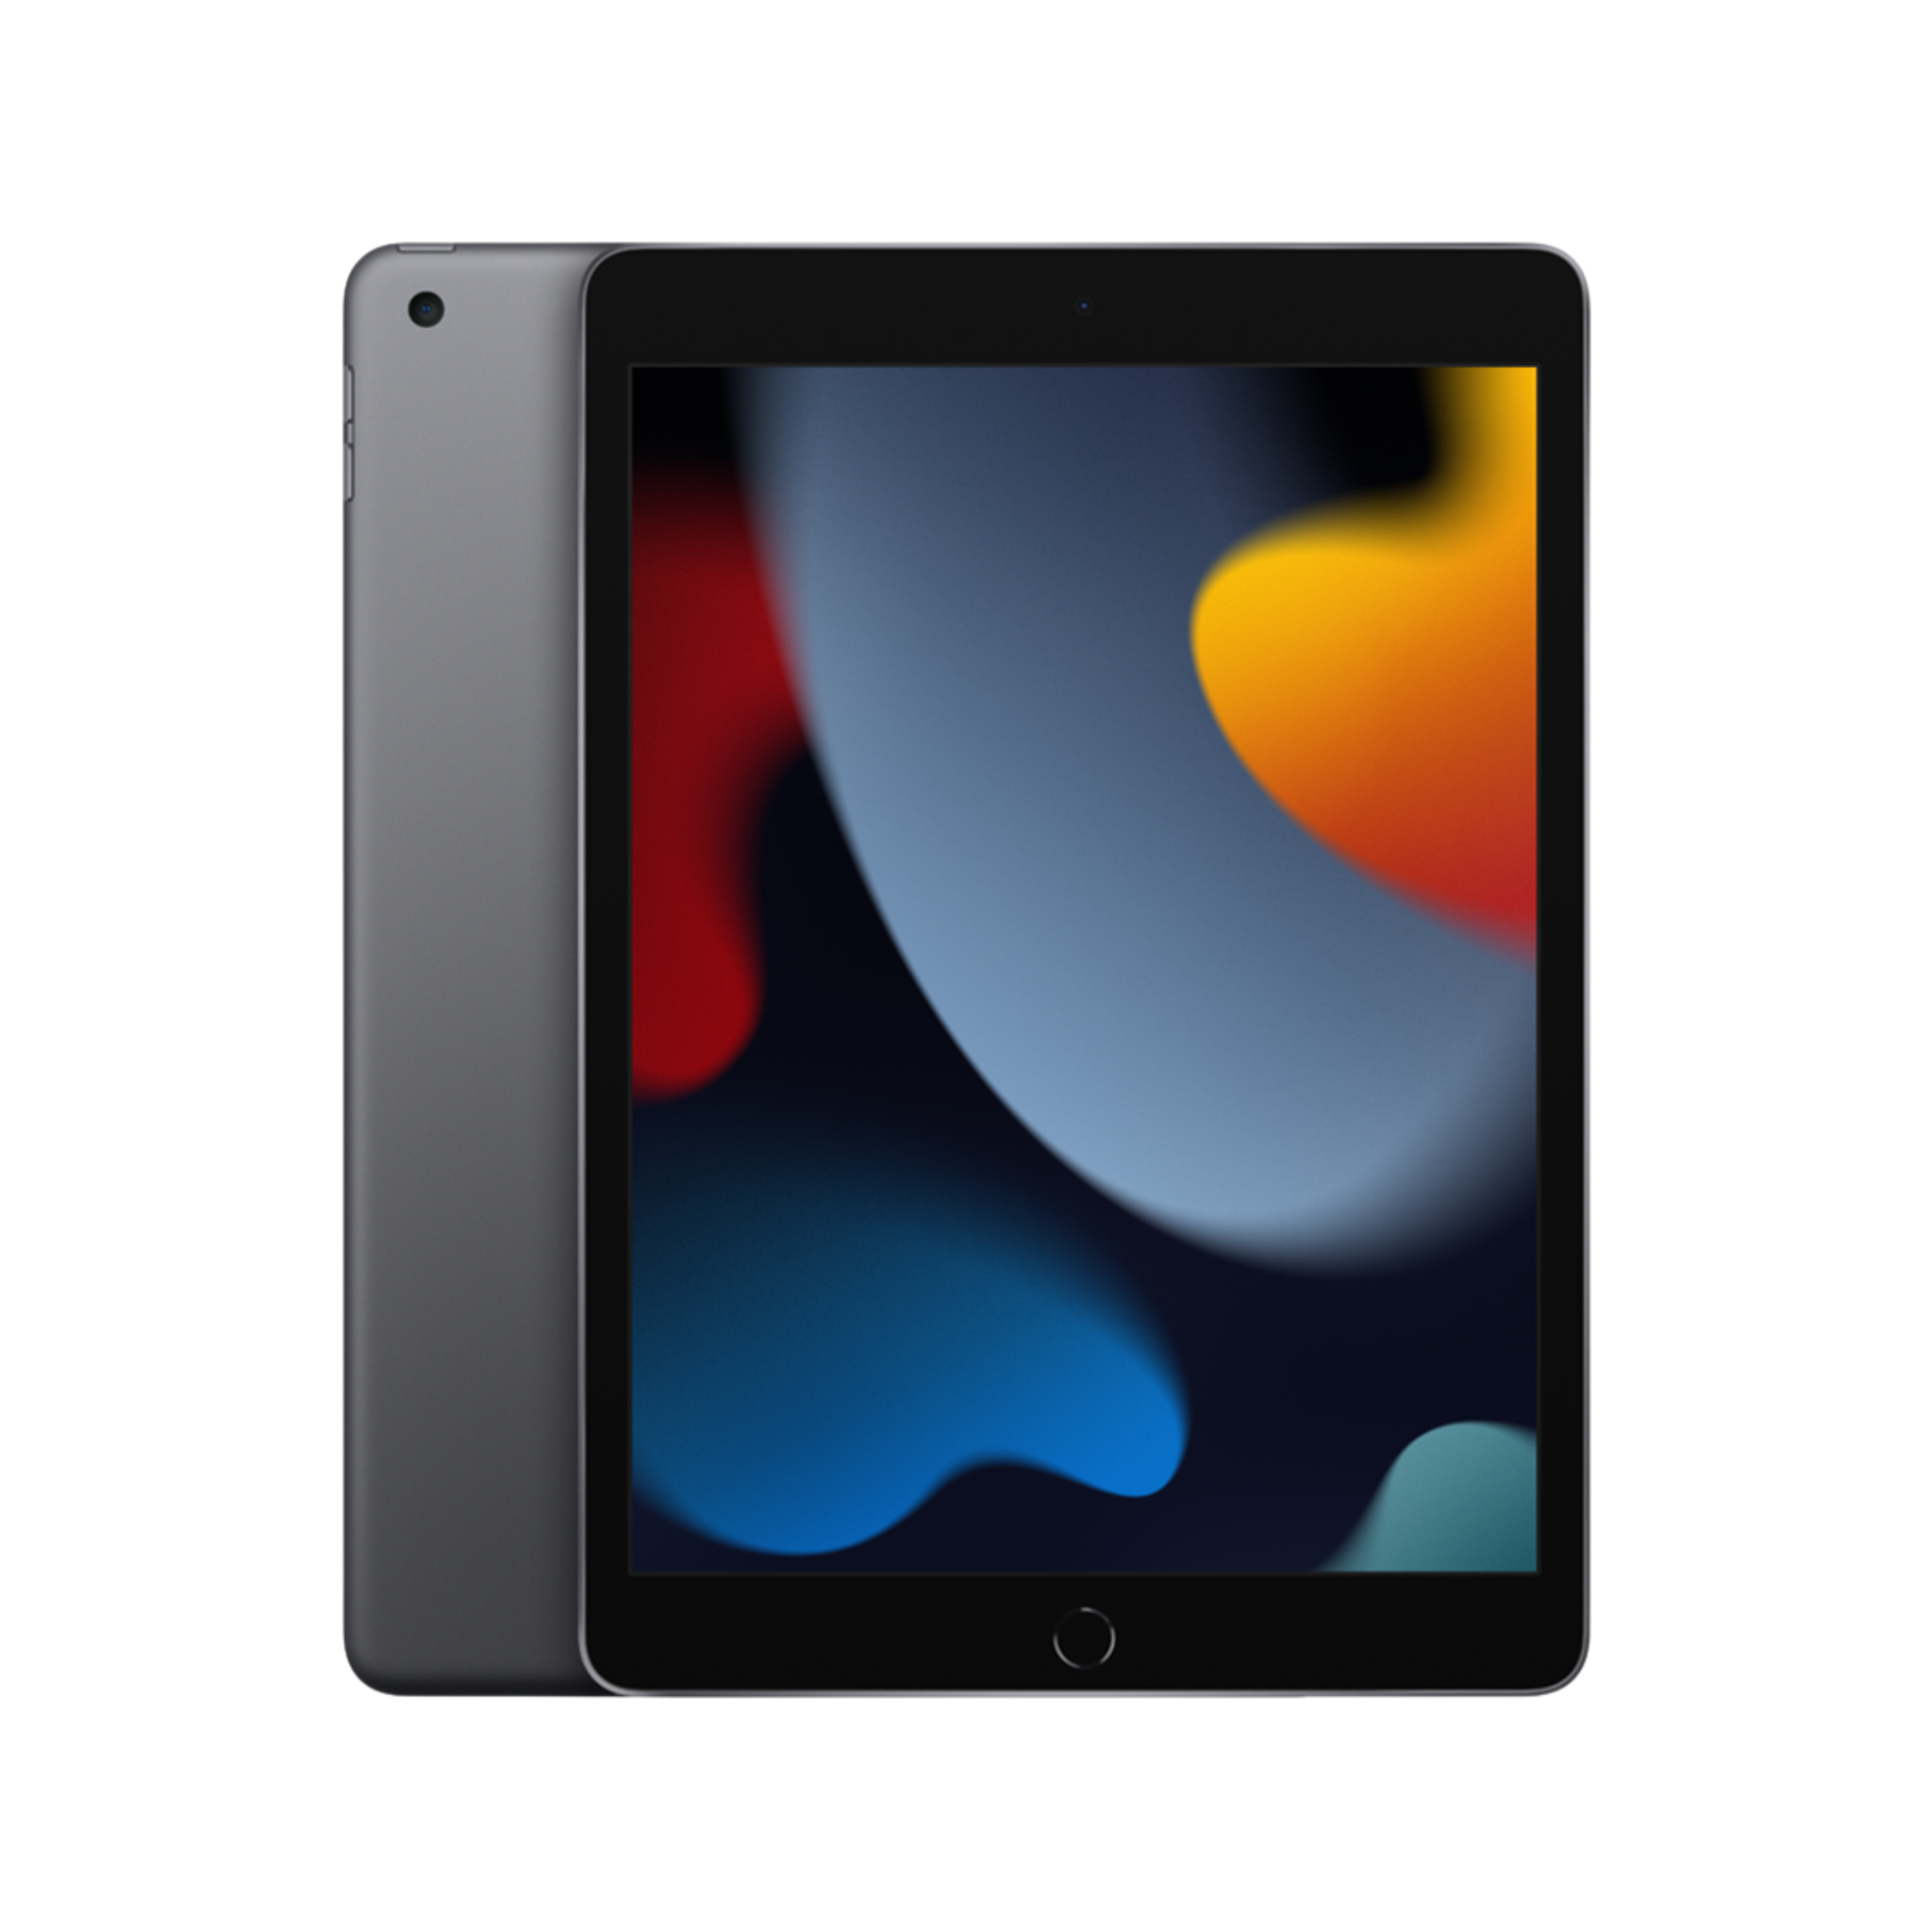 iPad (9th Generation) - Space Grey, 64GB, WiFi, 10.2” Retina Display